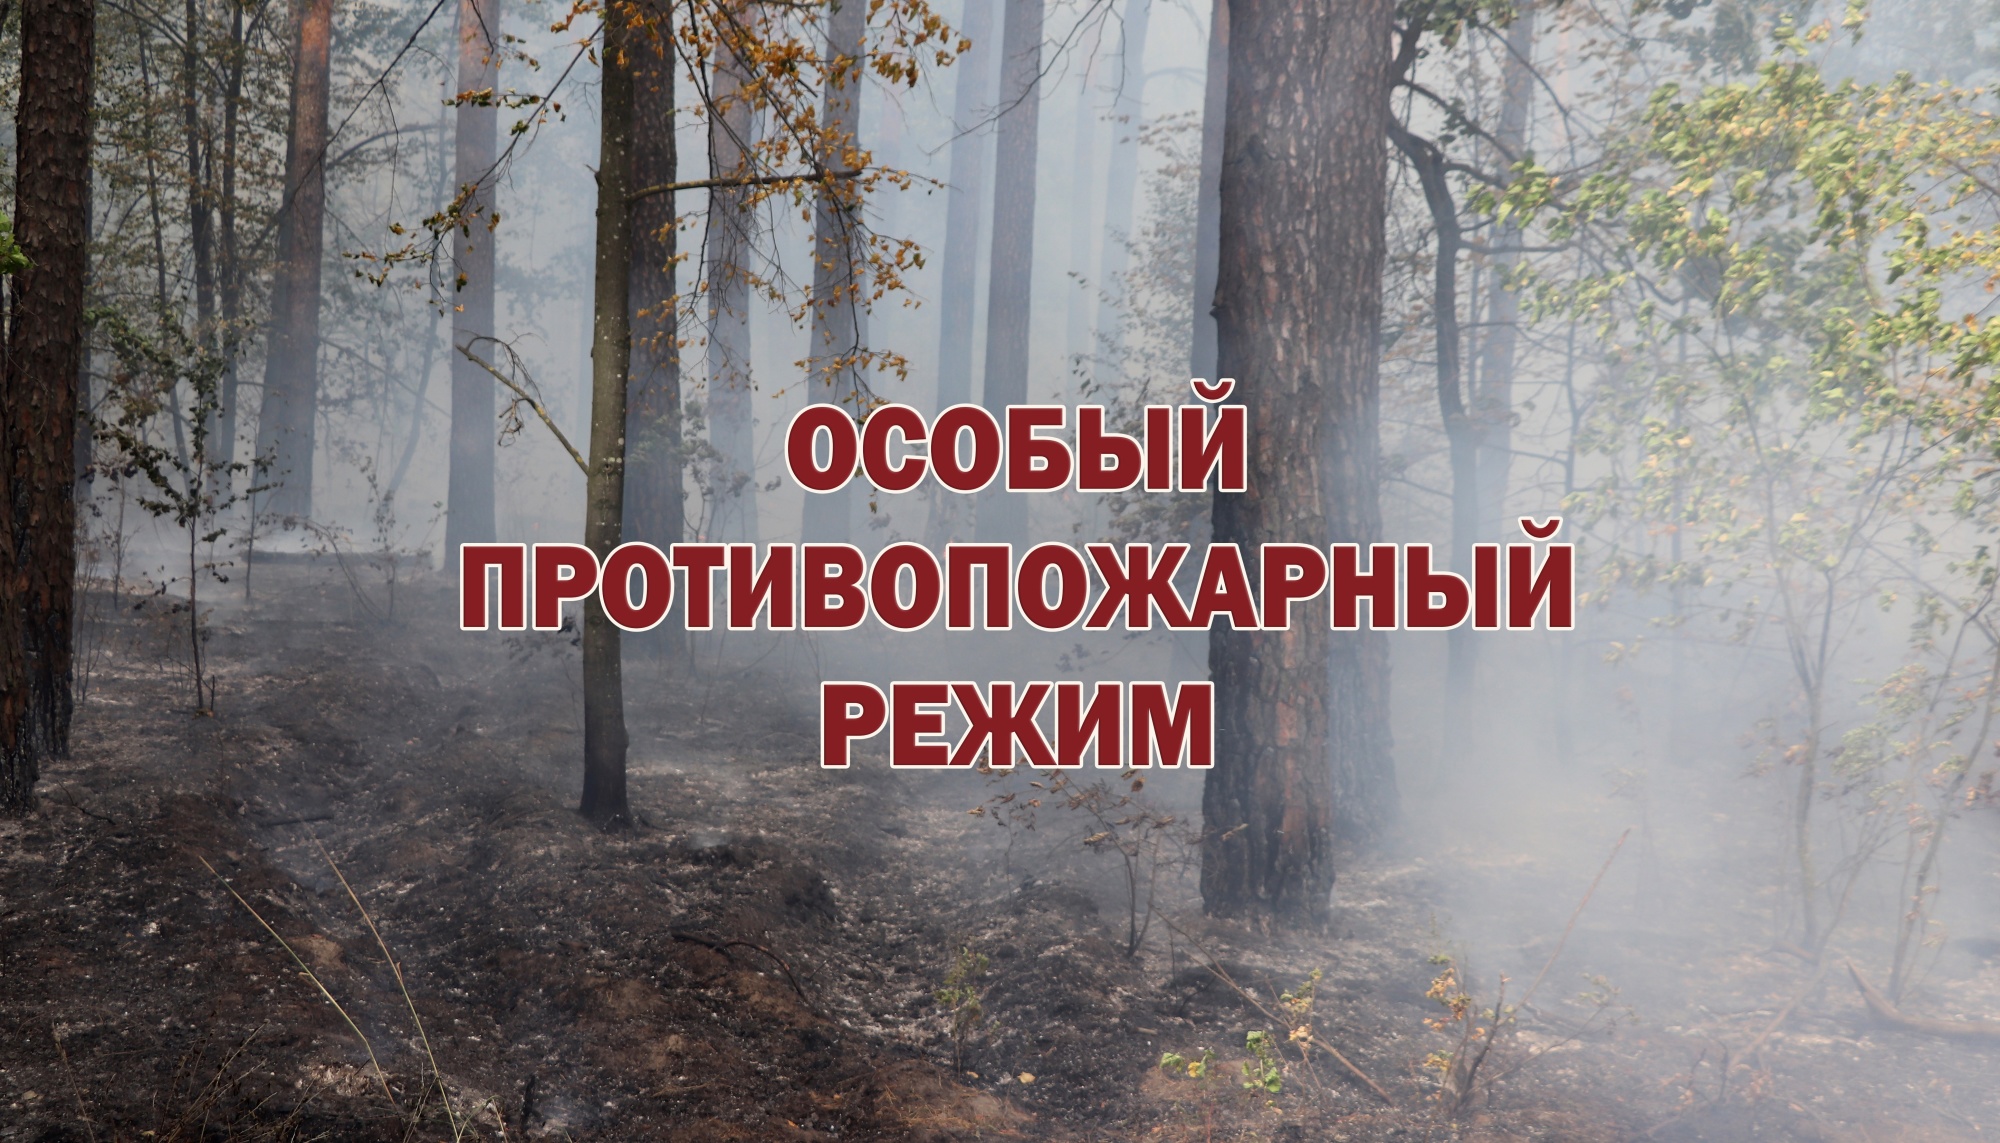 С сегодняшнего дня в Белгородском районе введён особый противопожарный режим.